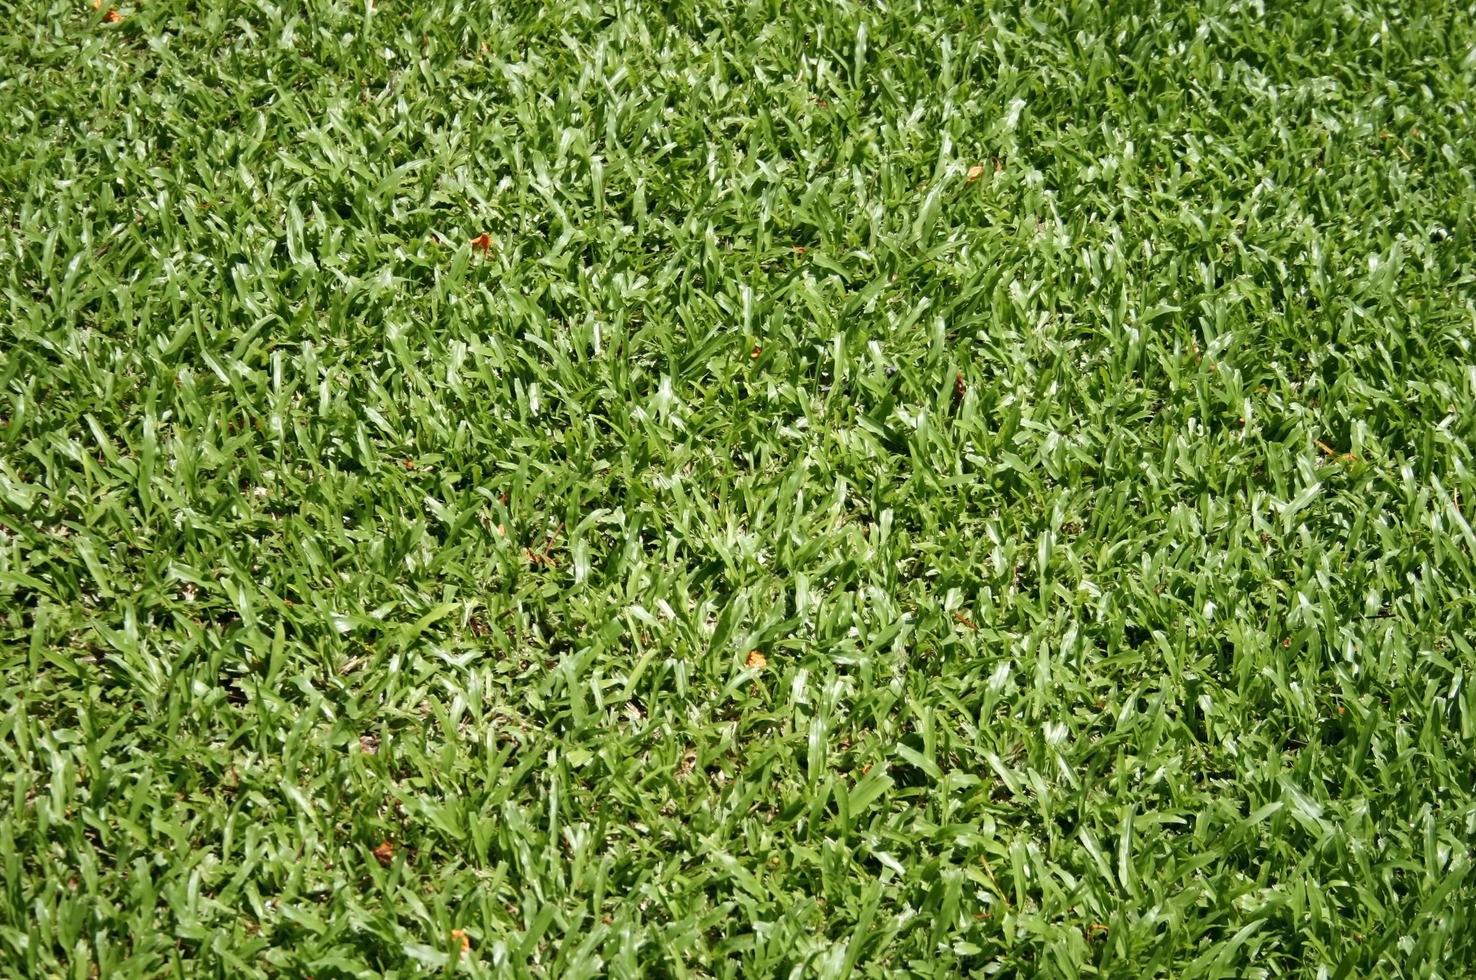 Green Grass texture photo